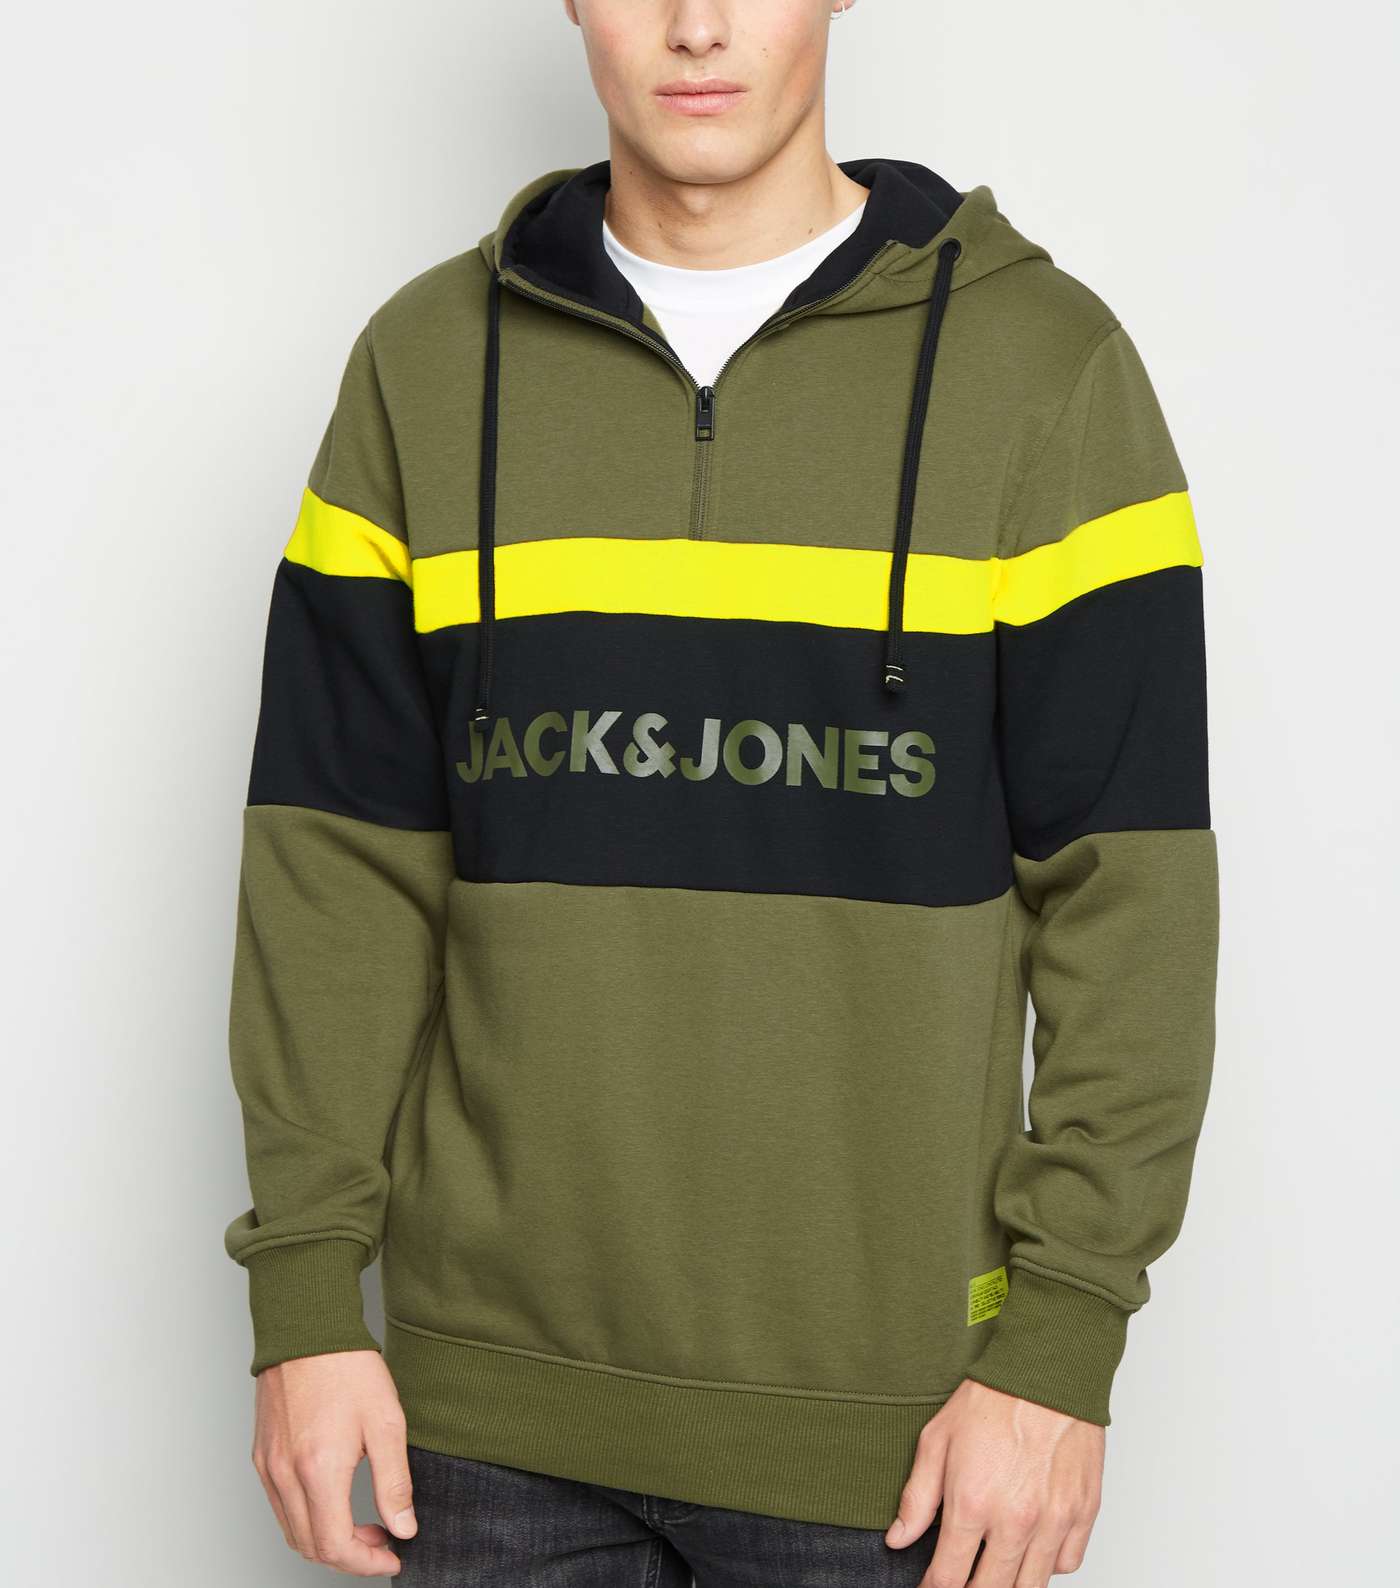 Jack & Jones Olive Zip Neck Sweatshirt